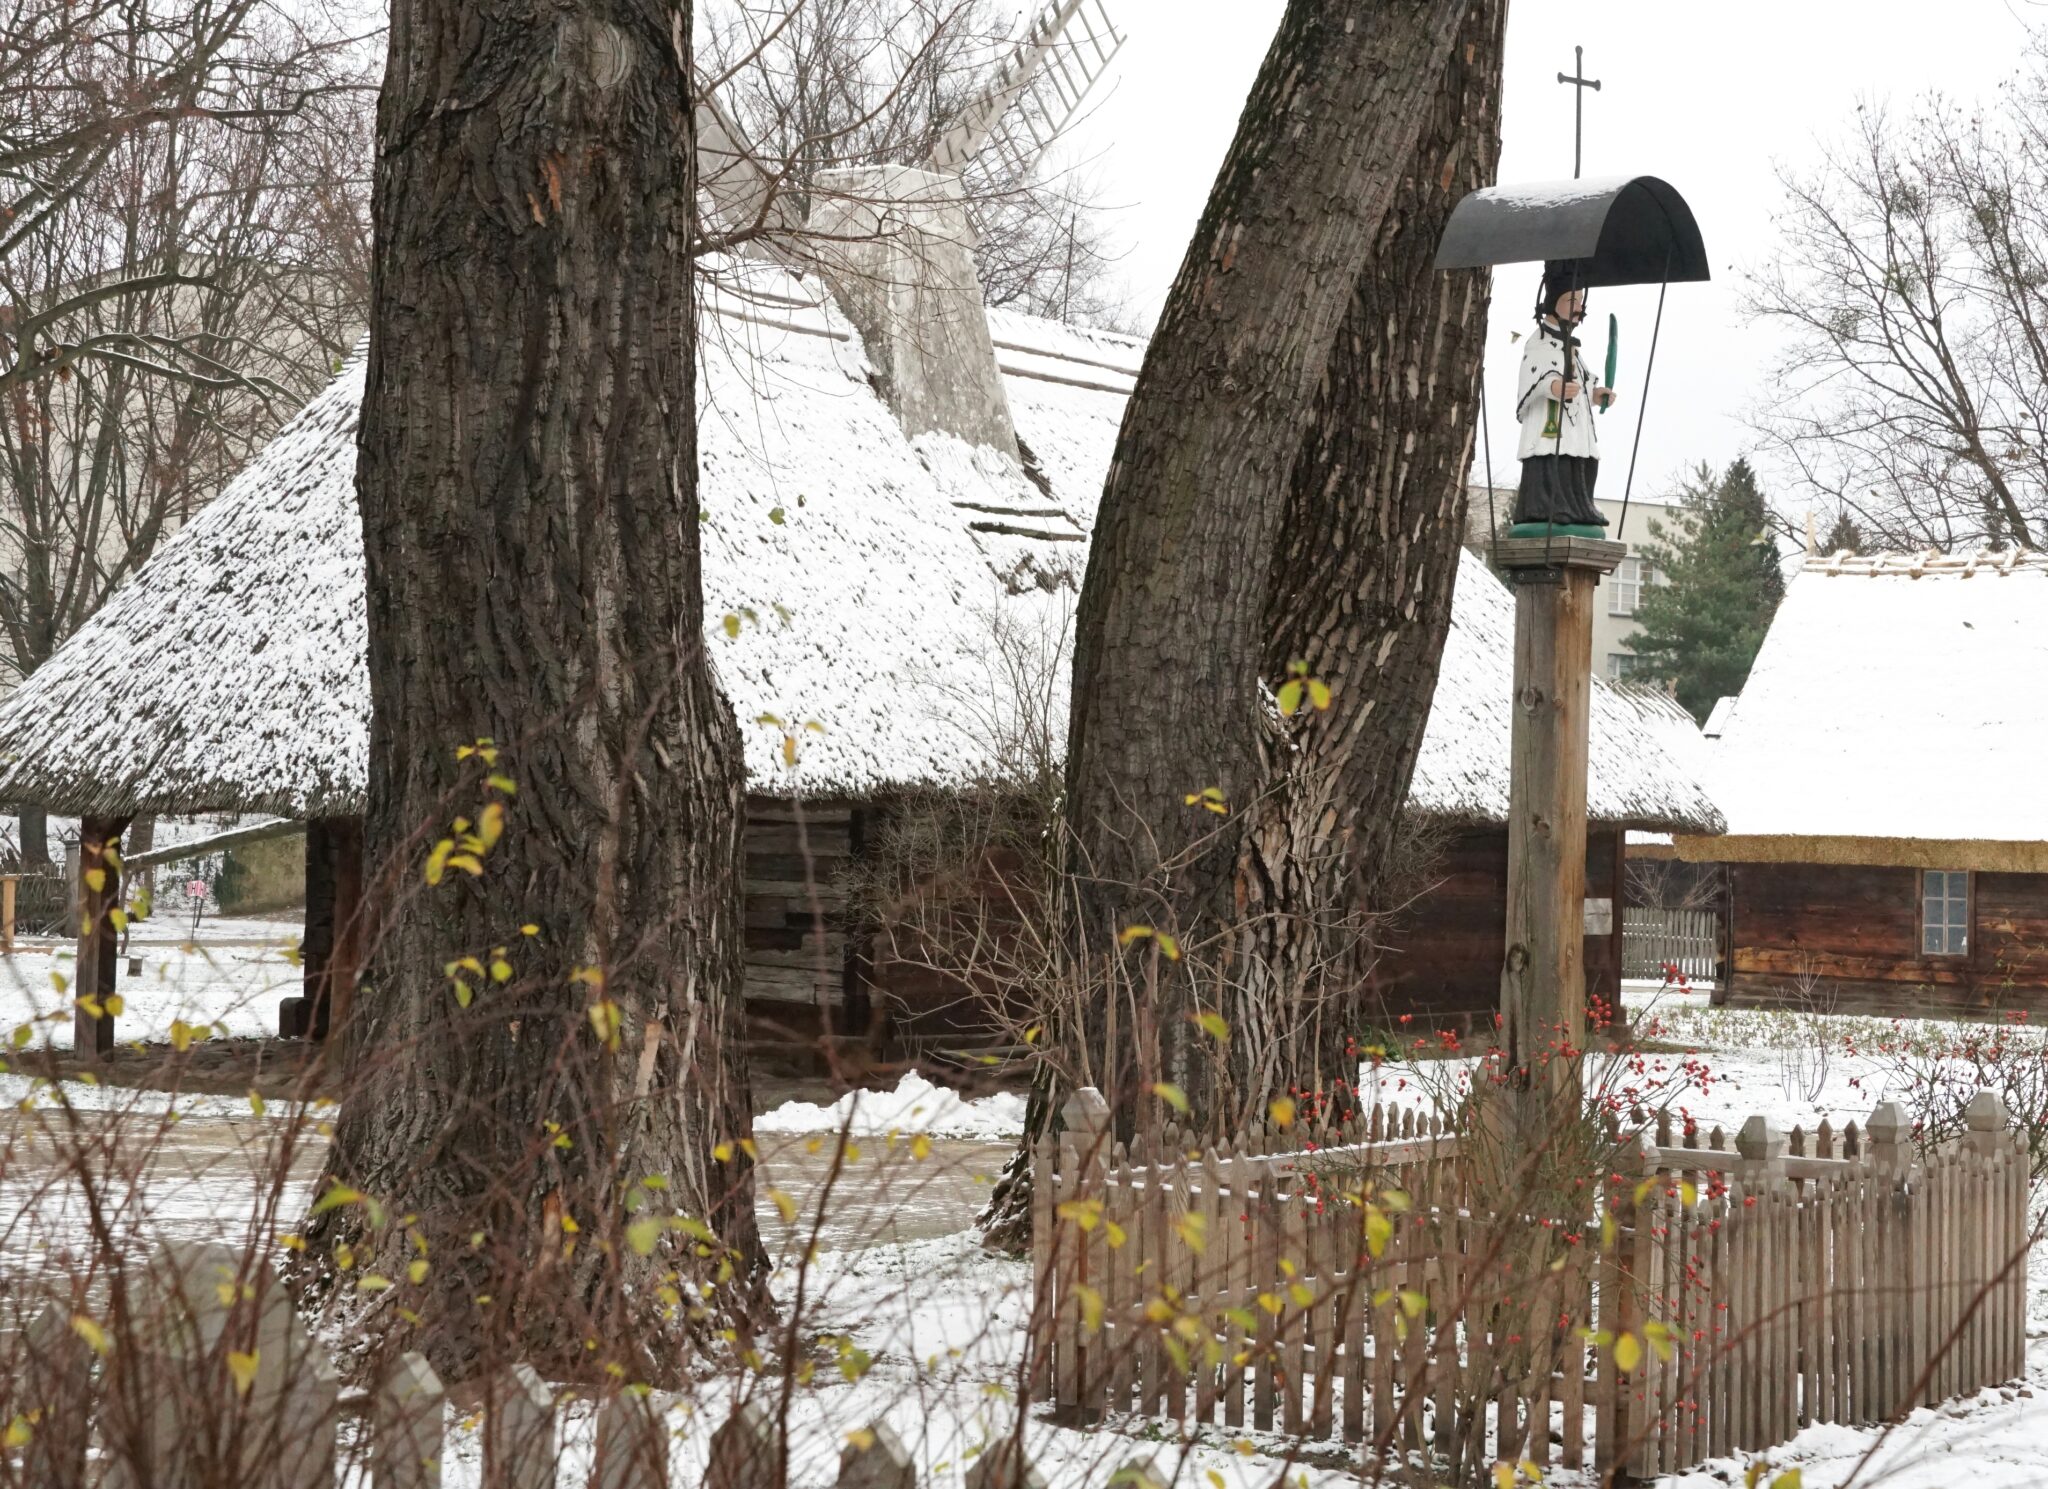 krajobraz zimowy: stare chaty wśród drzew